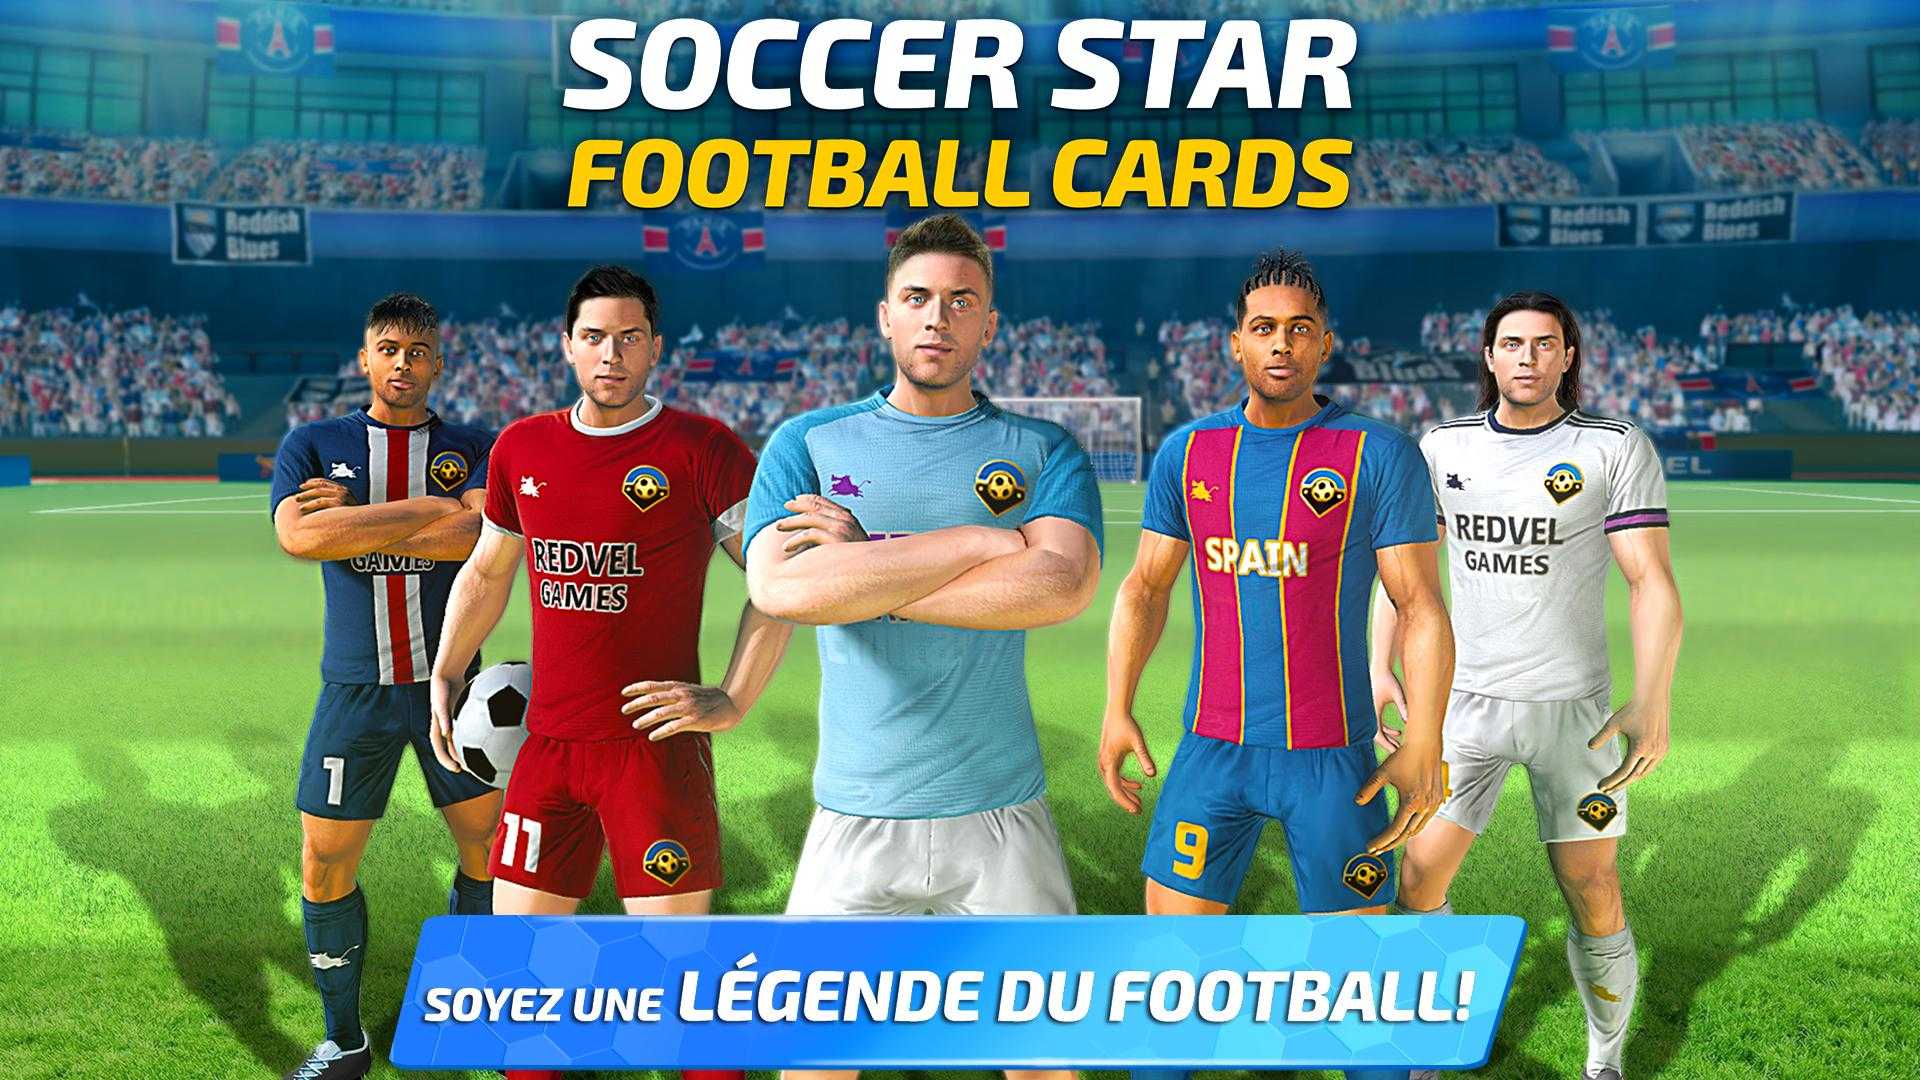 Soccer Star 2020 Football Cards: The soccer v1.3.0 (Mod) Apk